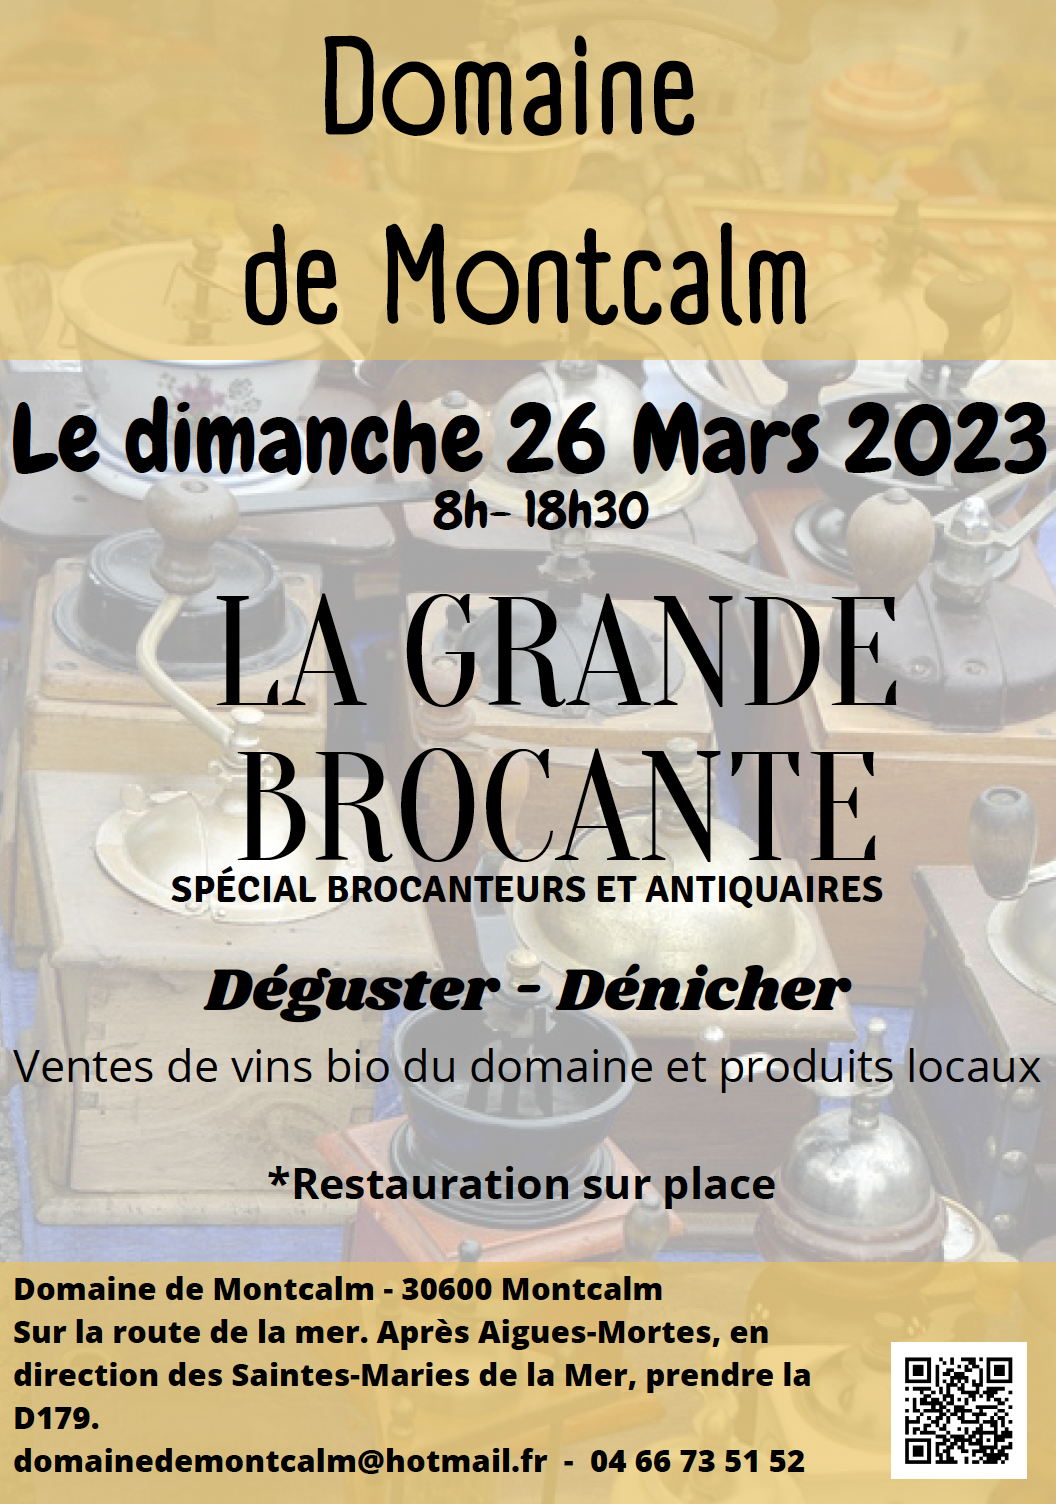 Brocante - Domaine de Montcalm - 26 mars 2023